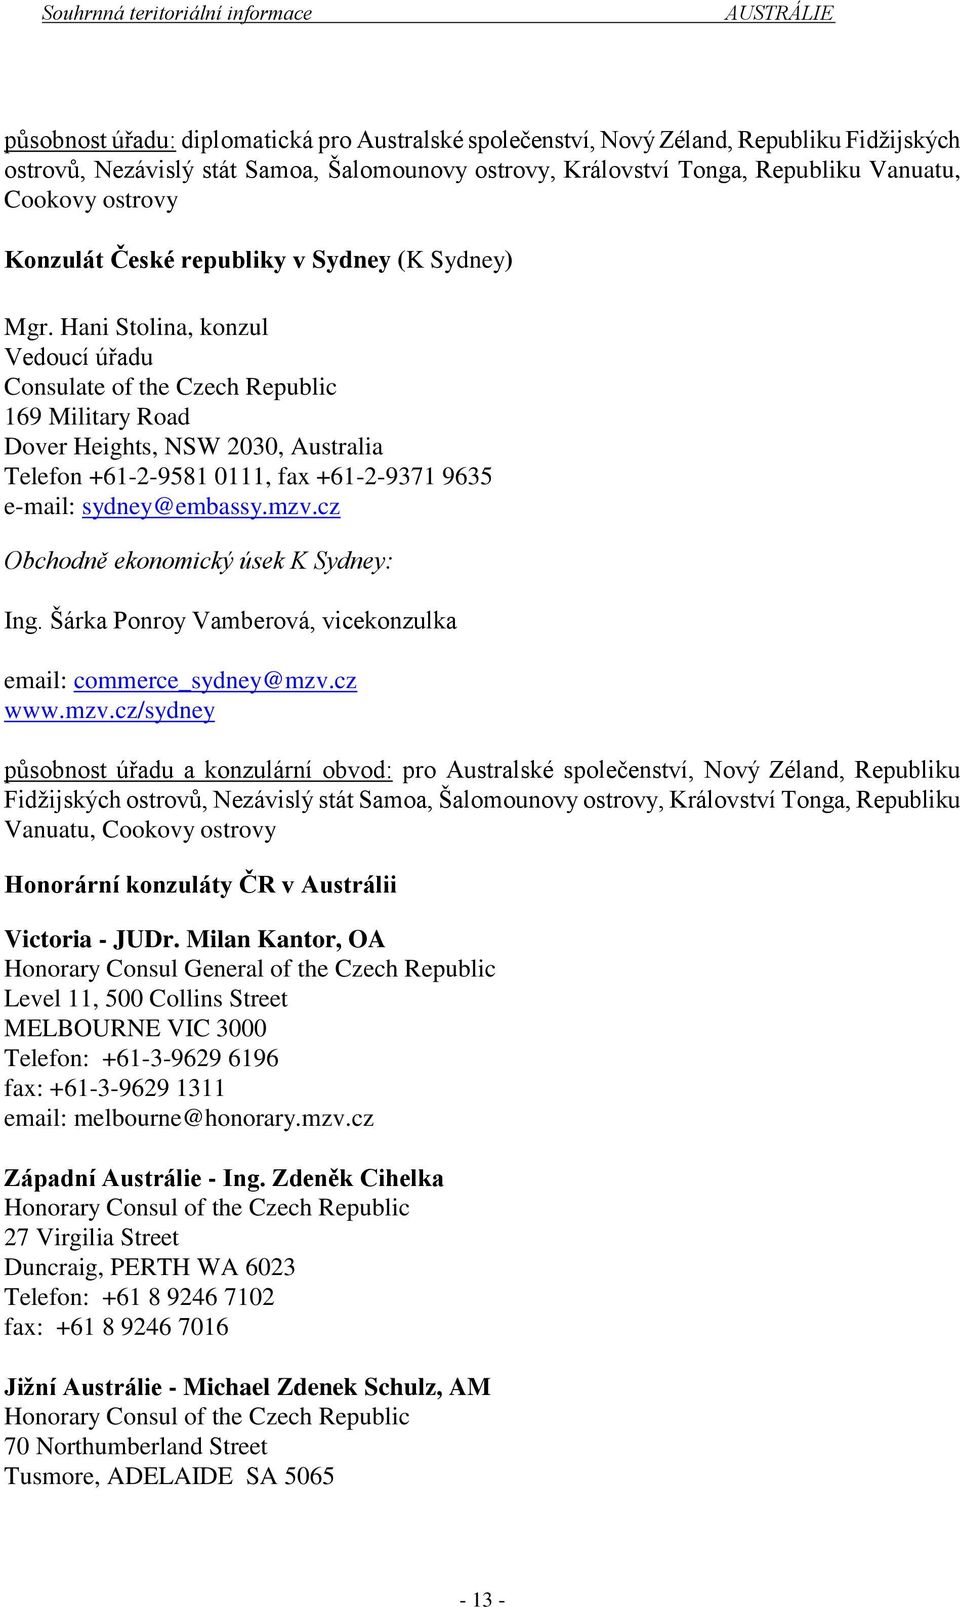 Hani Stolina, konzul Vedoucí úřadu Consulate of the Czech Republic 169 Military Road Dover Heights, NSW 2030, Australia Telefon +61-2-9581 0111, fax +61-2-9371 9635 e-mail: sydney@embassy.mzv.